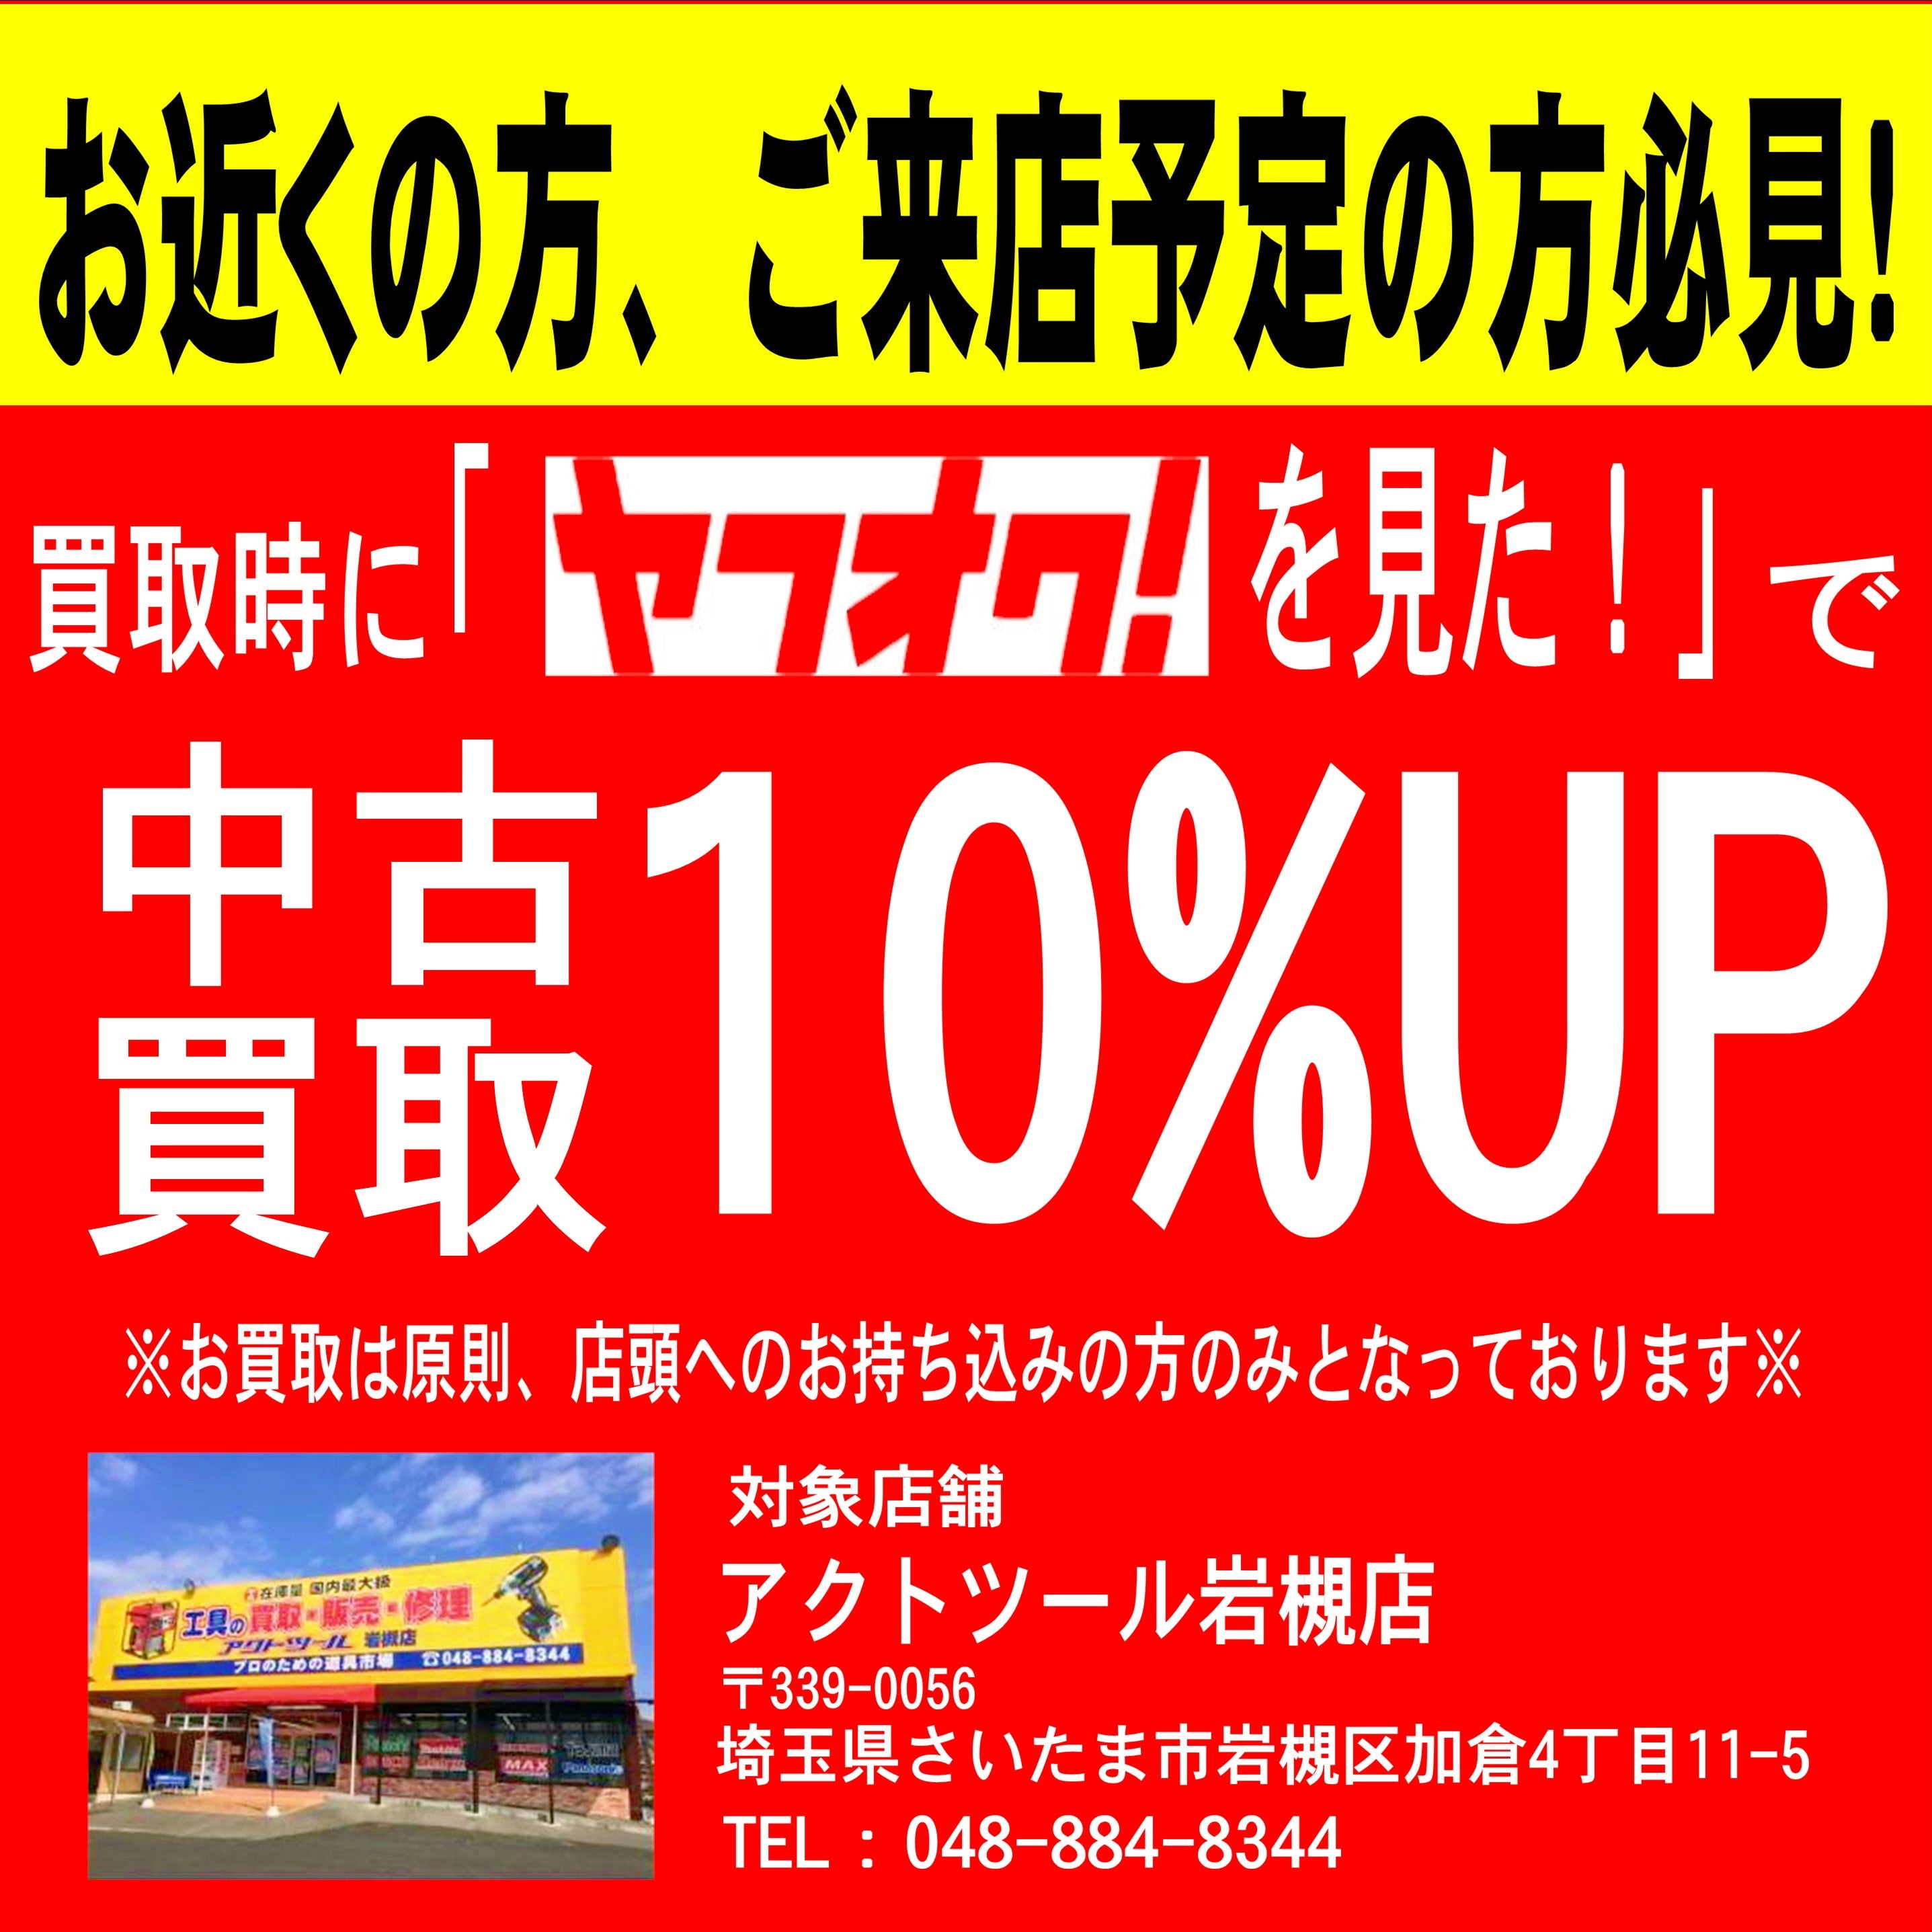 ☆マキタ(makita) 高圧エアタッカ AT425HE【岩槻店】 アクトツールオンラインショップ